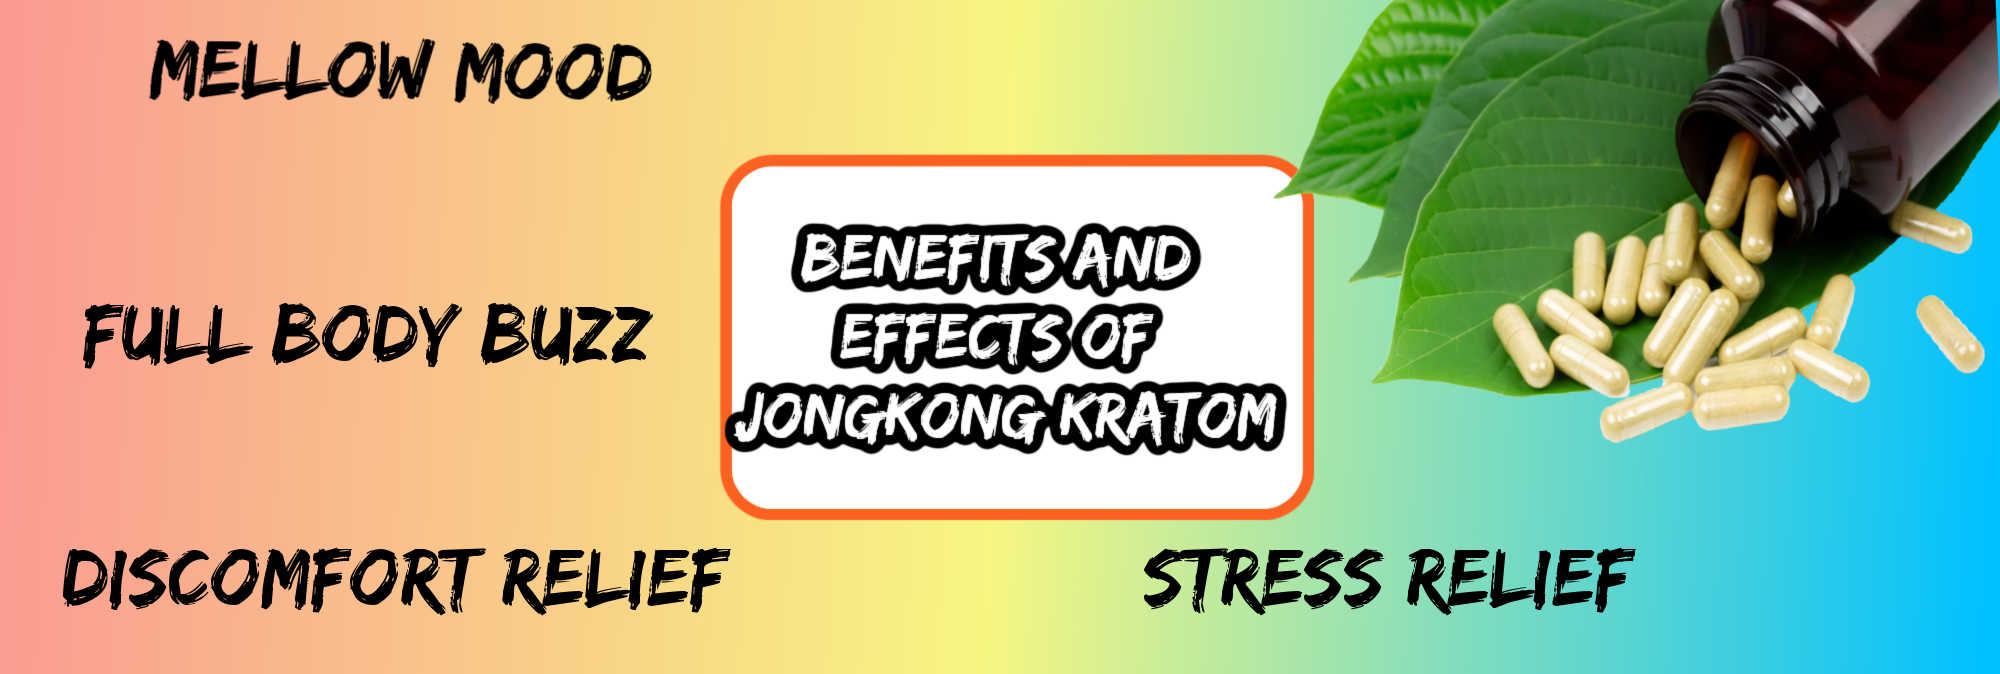 image of effects and benefits of jongkong kratom